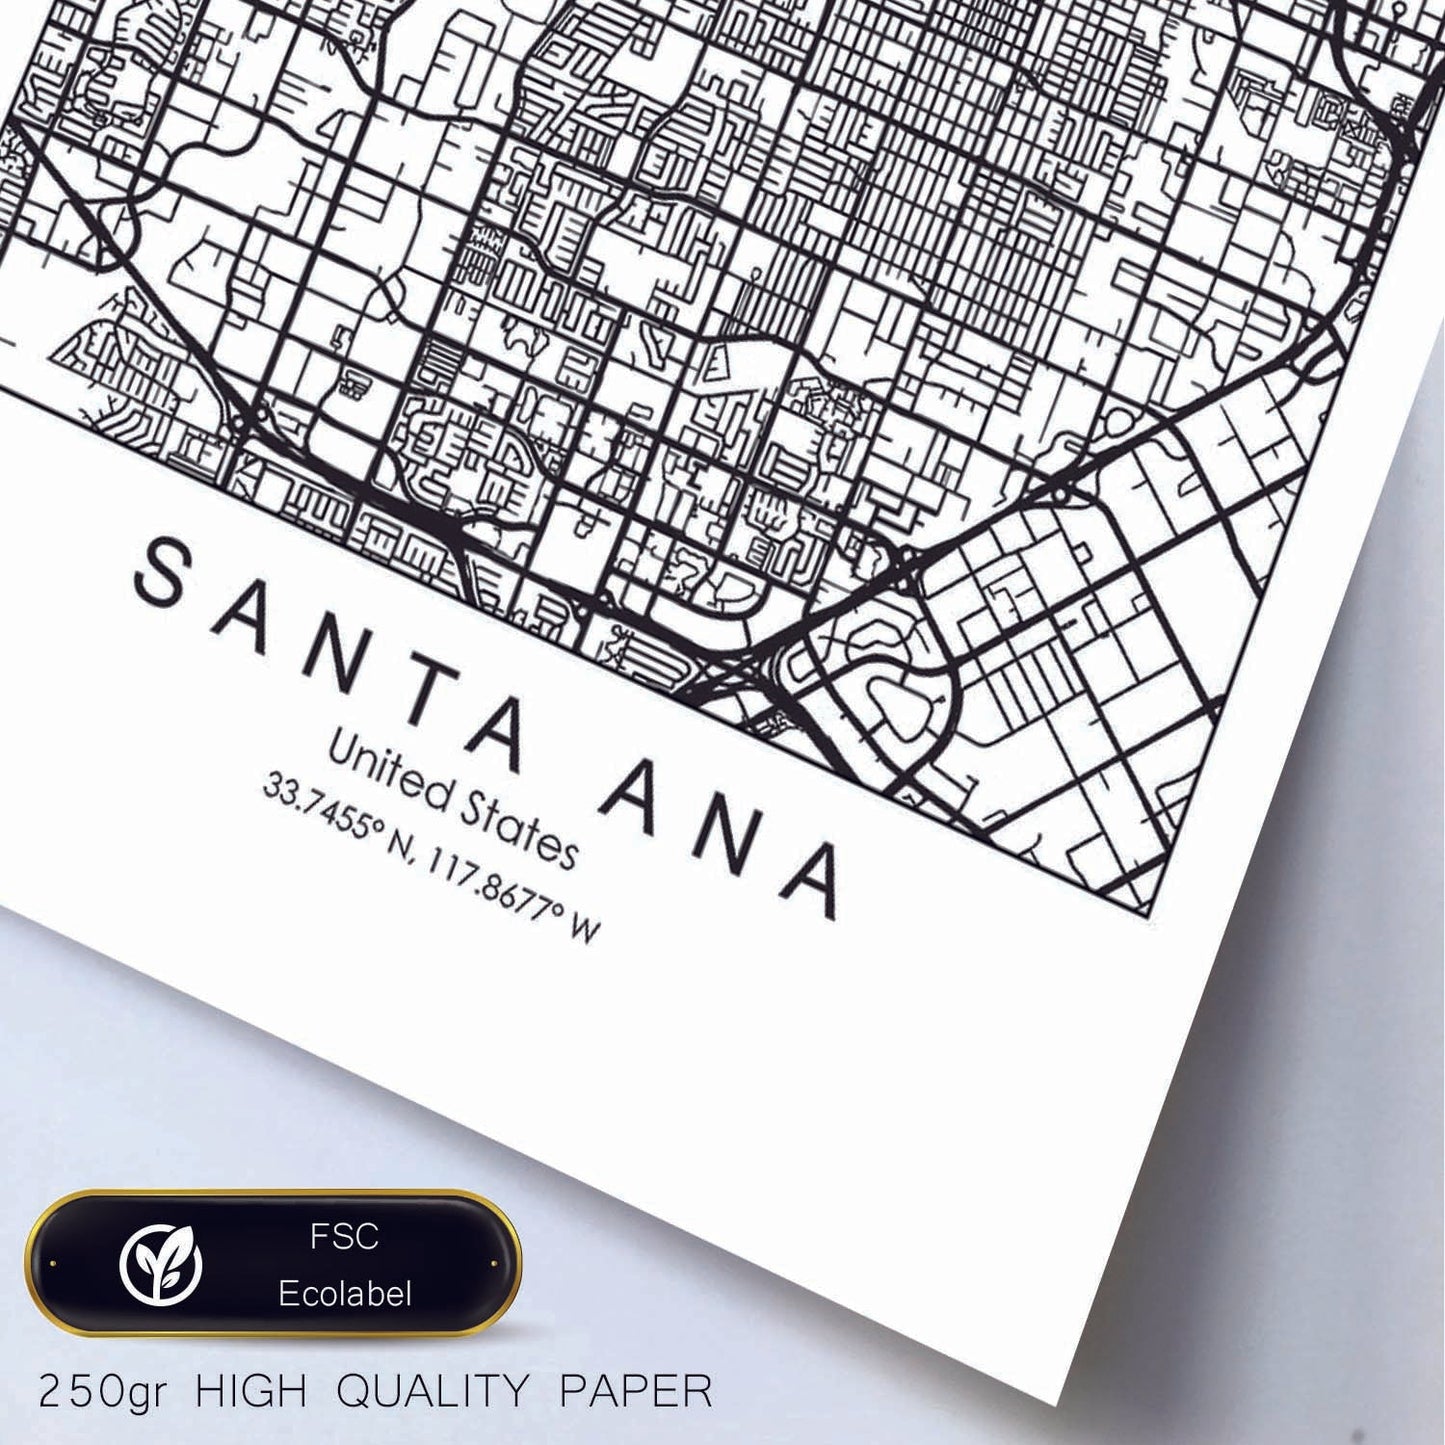 Poster con mapa de Santa Ana. Lámina de Estados Unidos, con imágenes de mapas y carreteras-Artwork-Nacnic-Nacnic Estudio SL